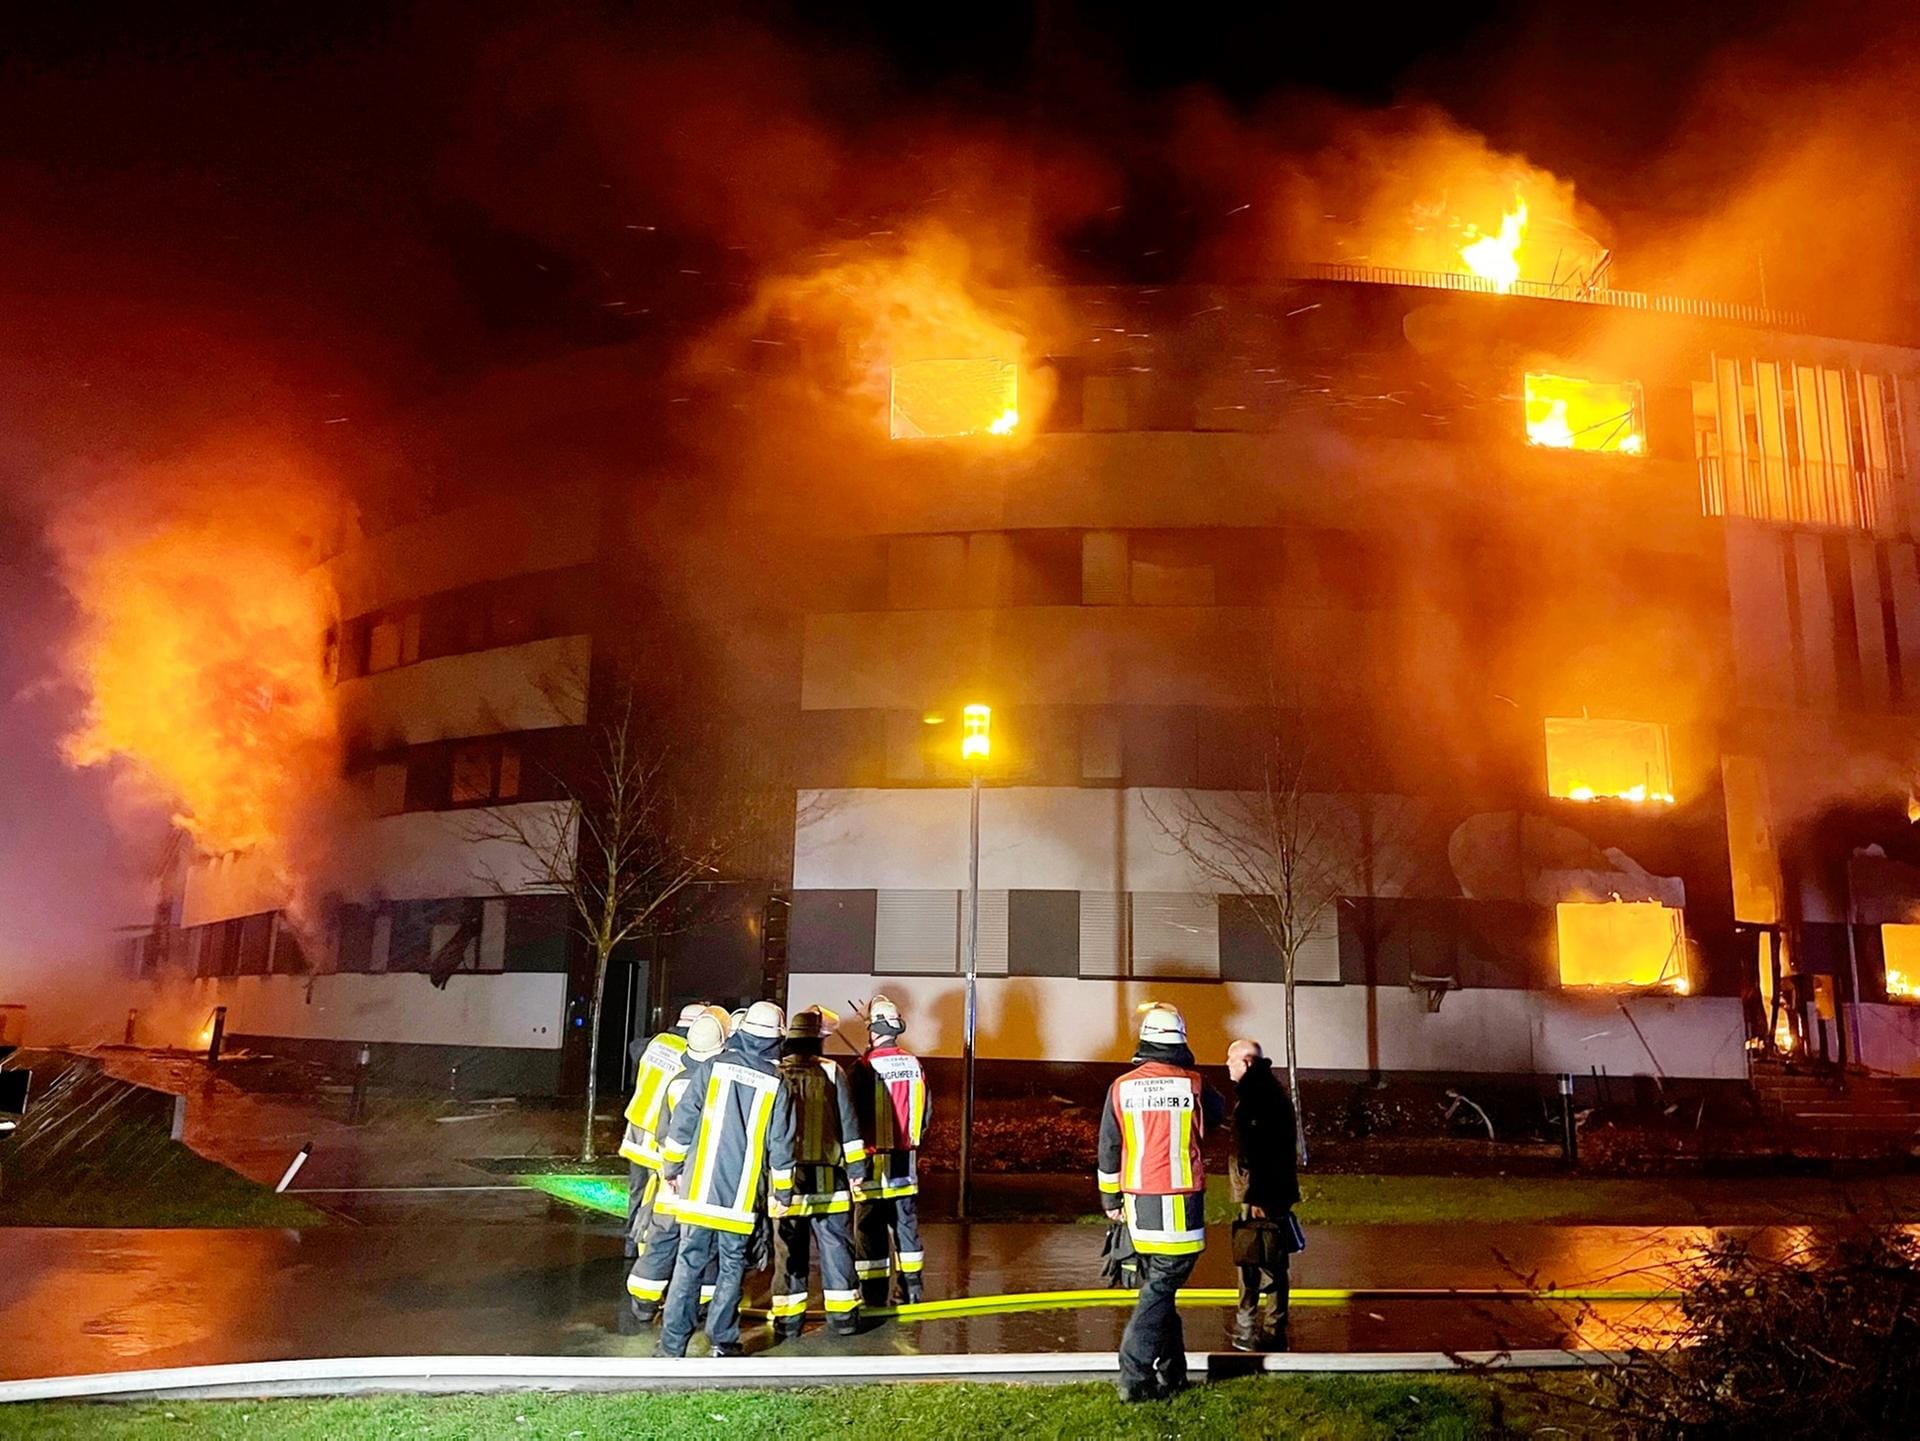 Feuerwehrleute stehen vor dem Gebäude, aus dem die Flammen schlagen: Rund 150 Einsatzkräfte kämpften bis zum Morgen gegen den Brand an.